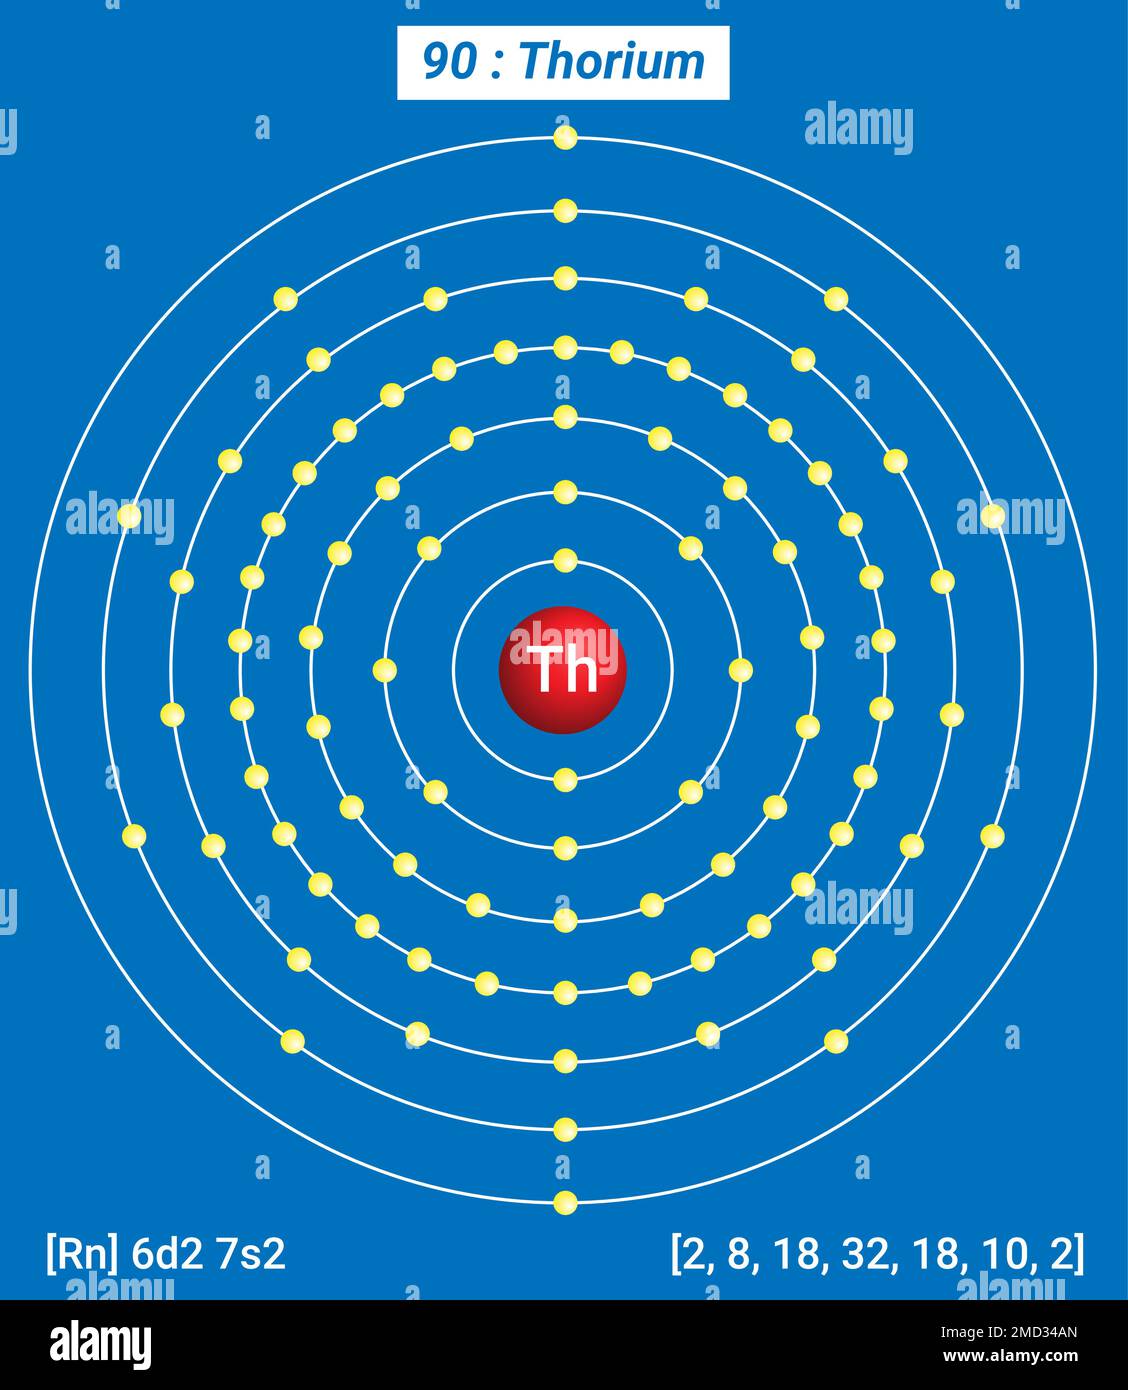 thorium element facts